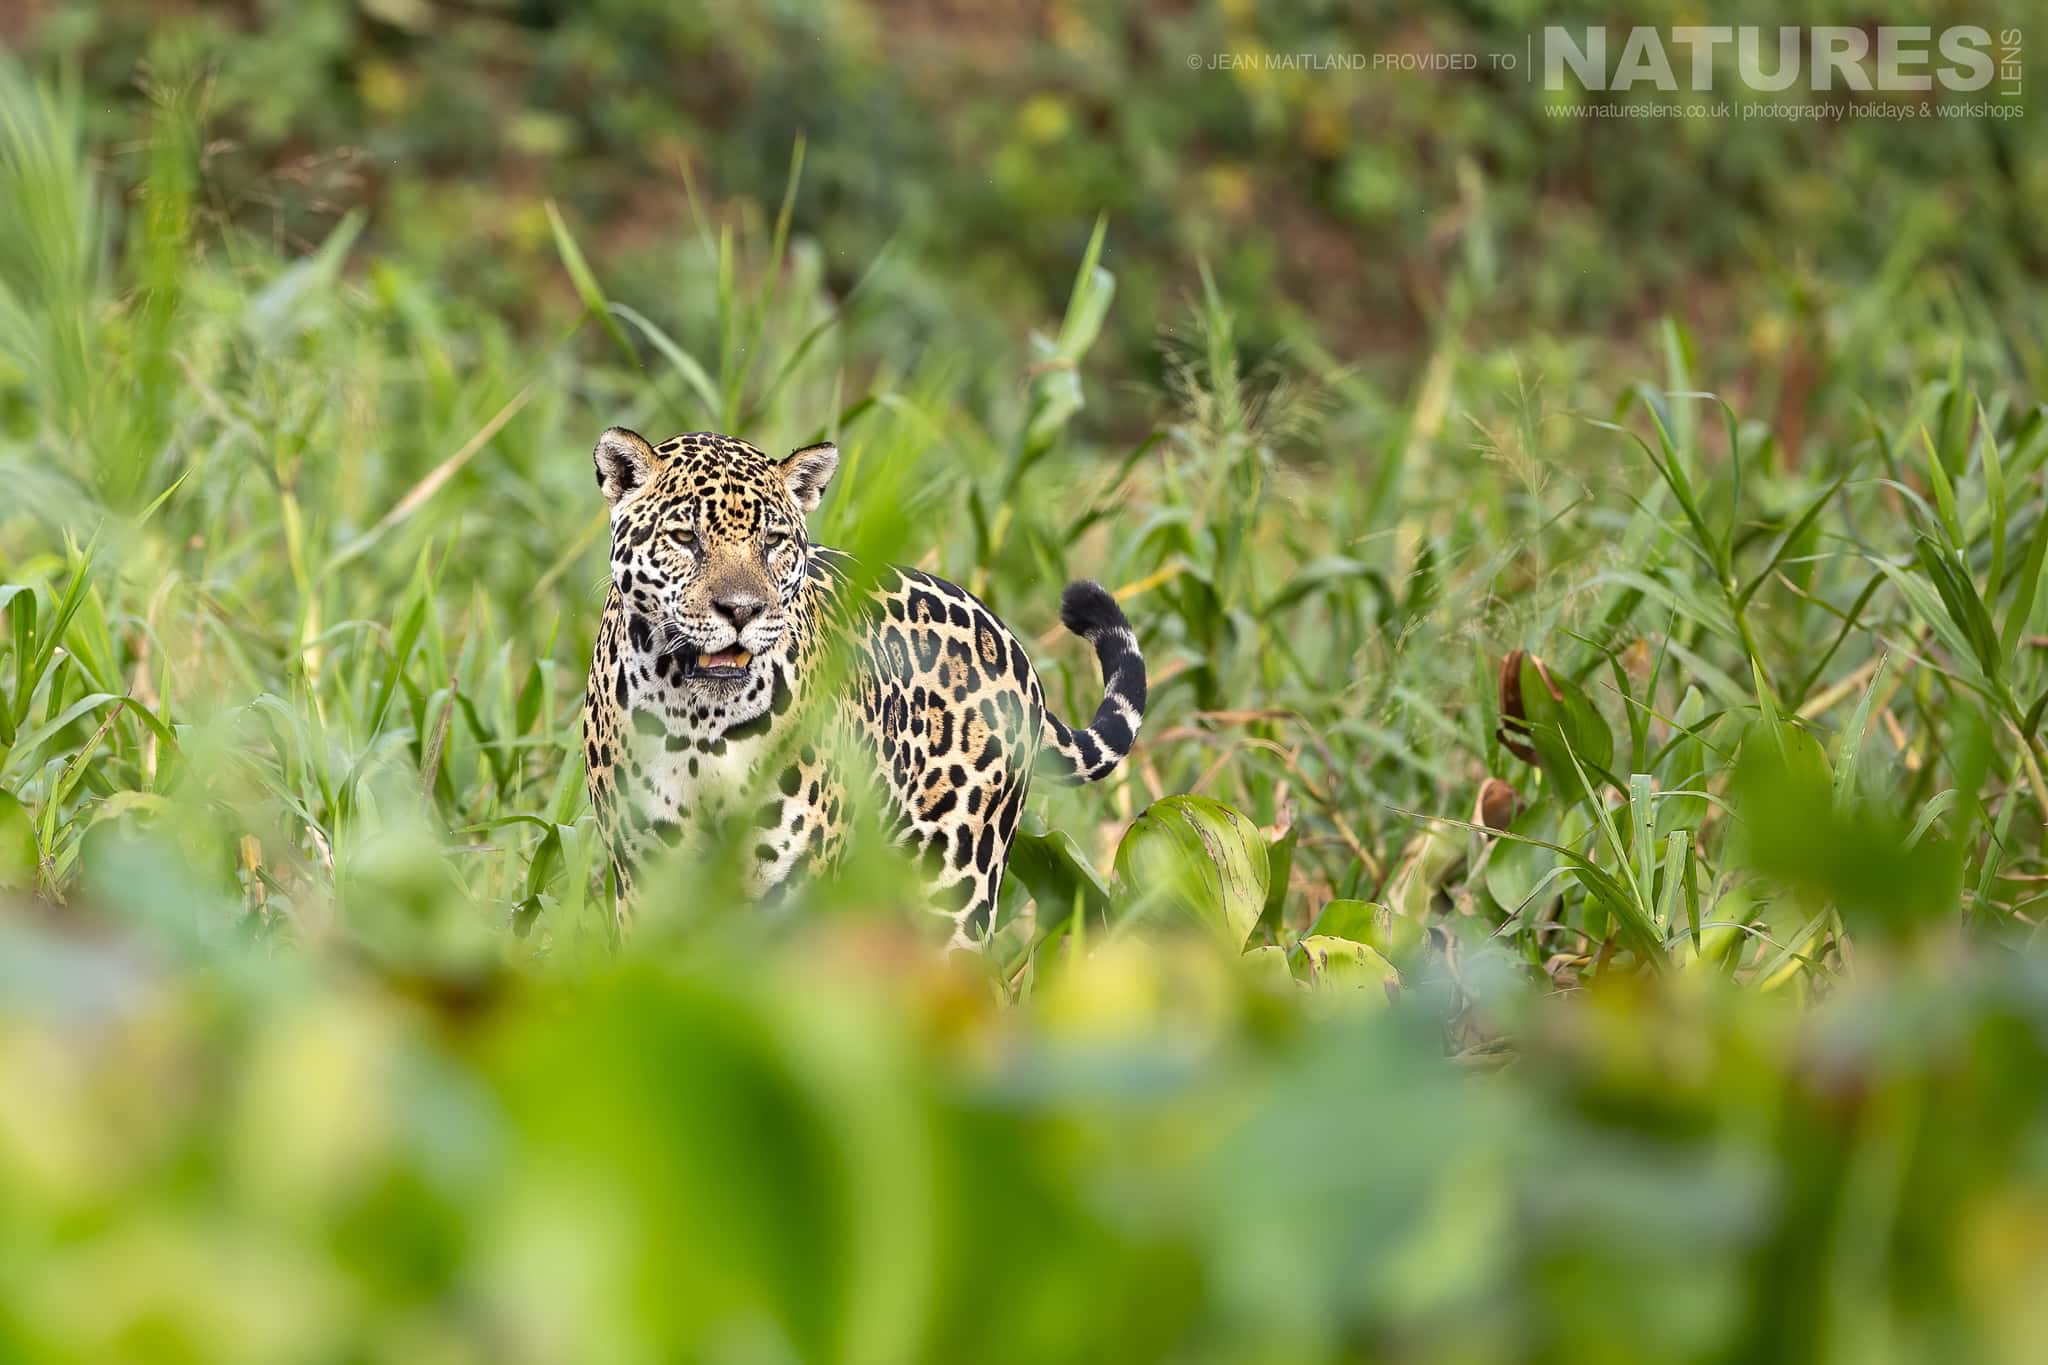 Photograph The Jaguars Of The Pantanal